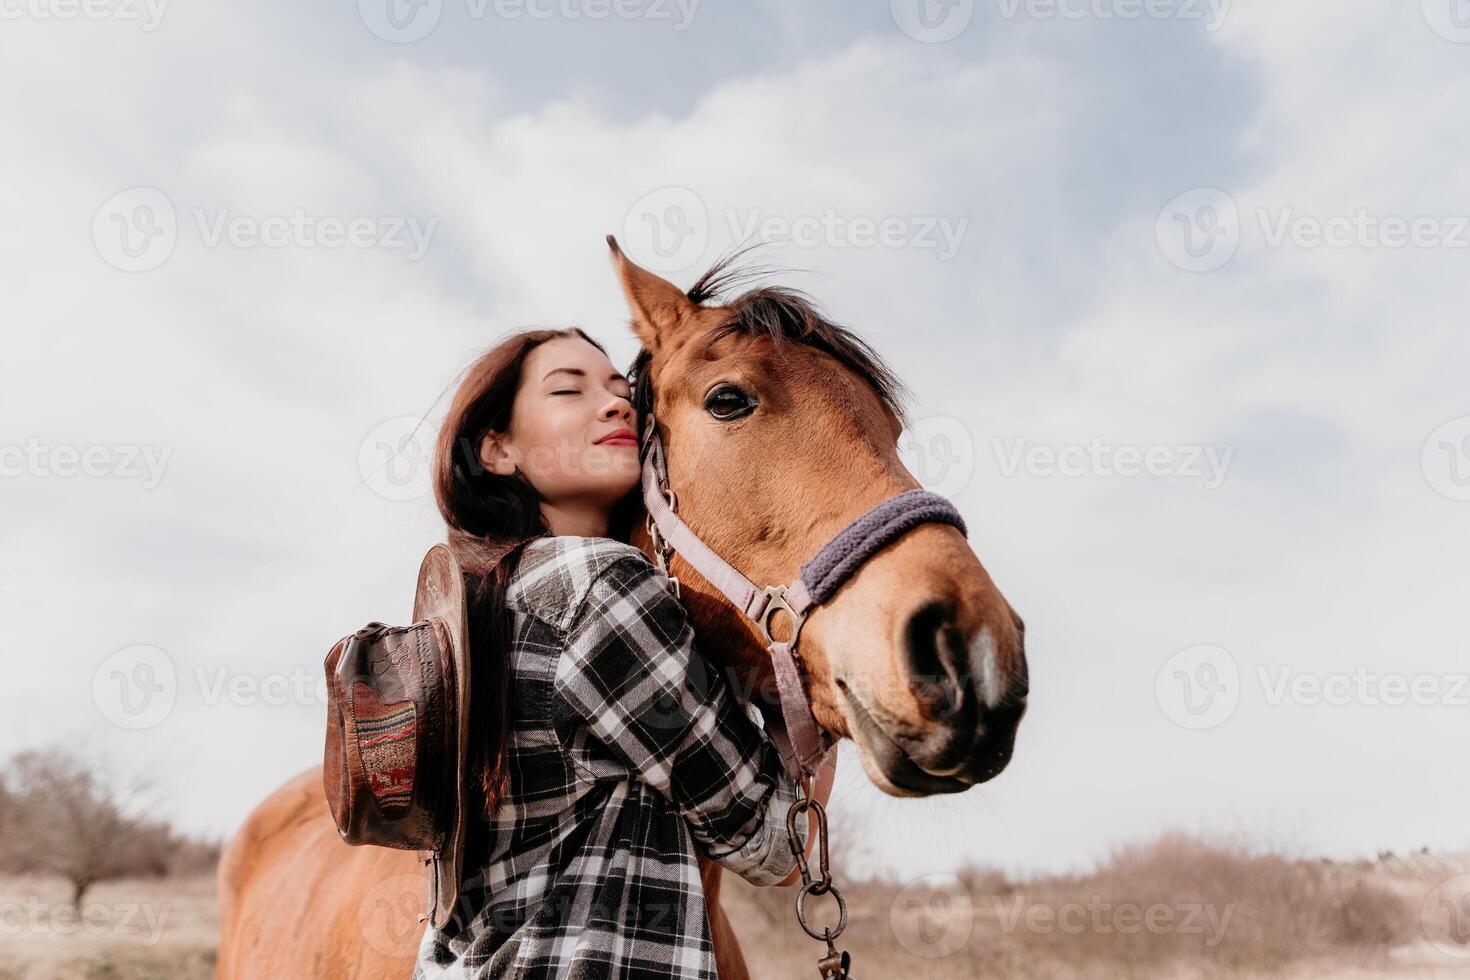 ung Lycklig kvinna i hatt med henne häst i kväll solnedgång ljus. utomhus- fotografi med mode modell flicka. livsstil humör. begrepp av utomhus- ridning, sporter och rekreation. foto